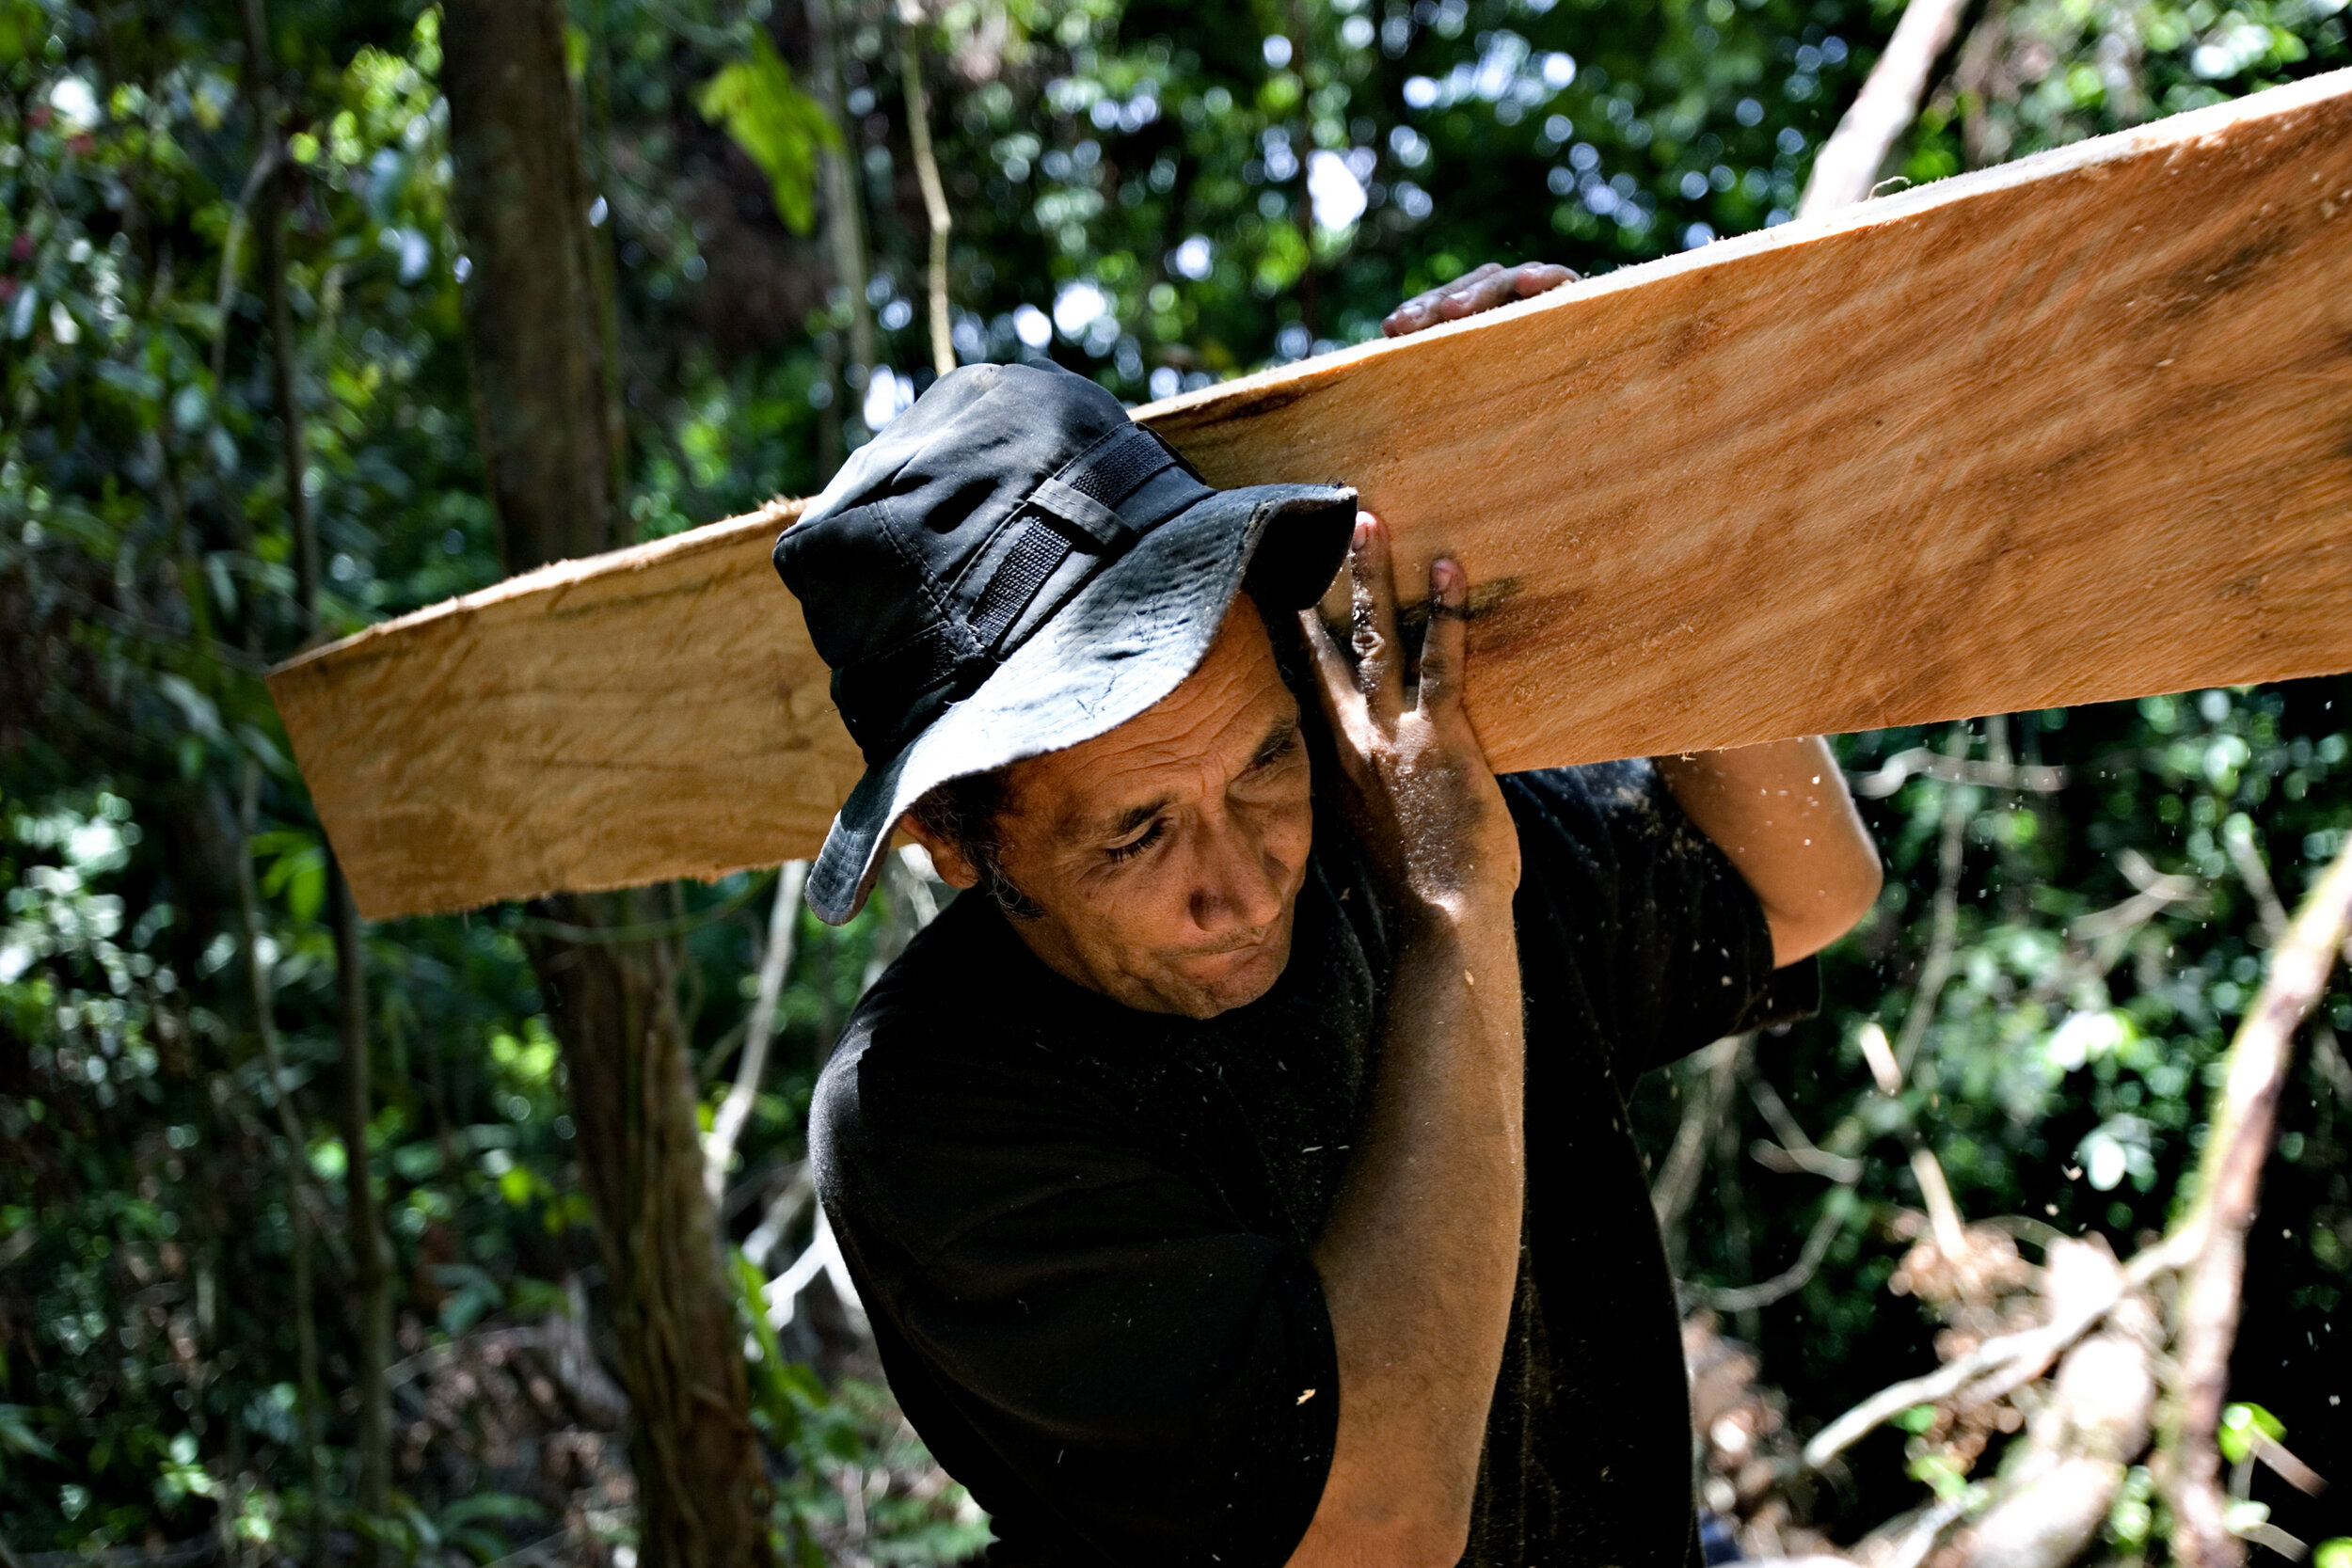 Carlos løfter tømmer - Miriam Dalsgaard.jpg